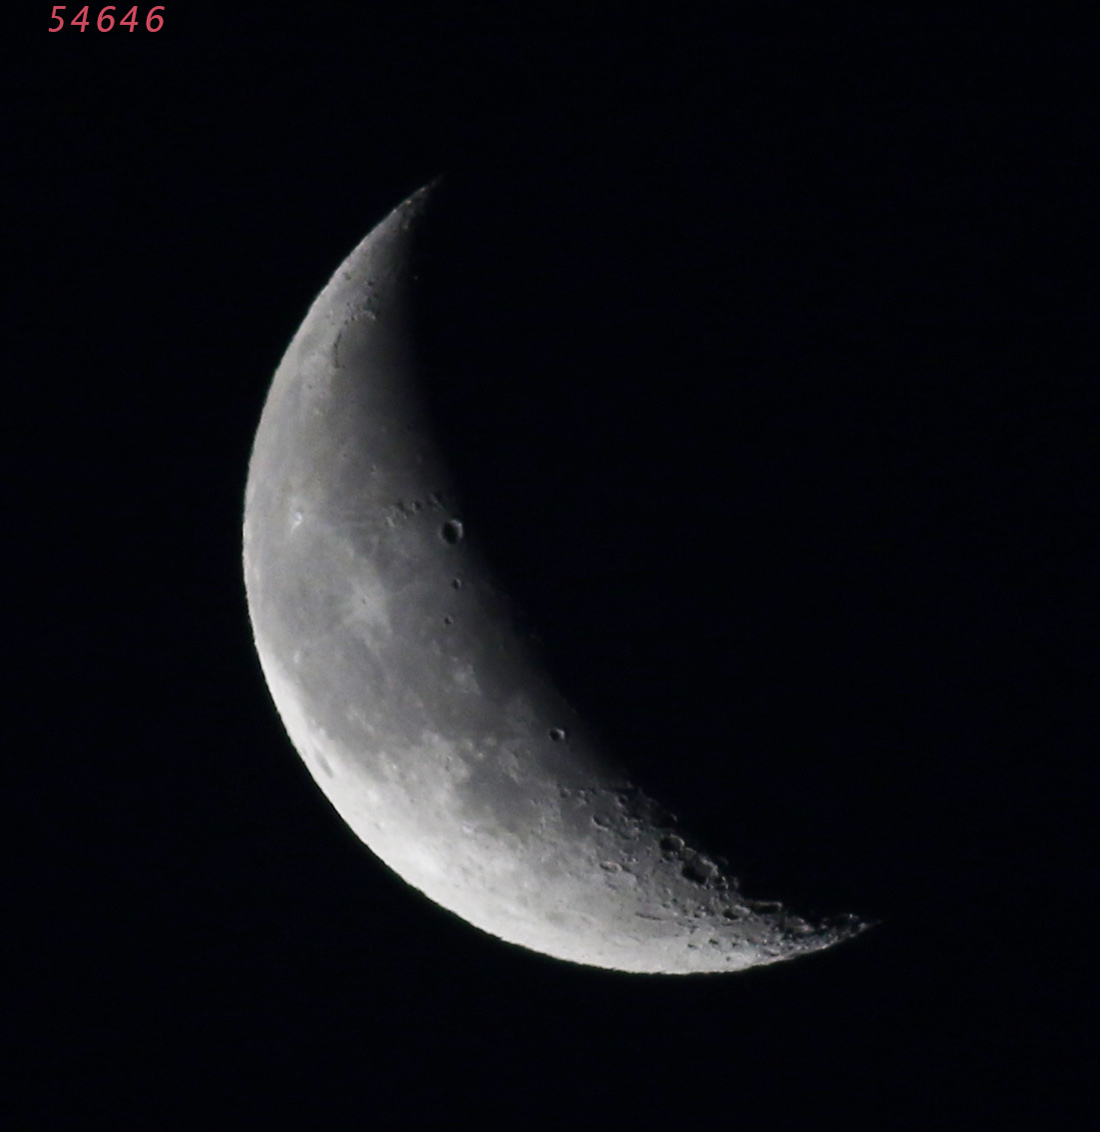 la lune, au matin du 31/12/2018 (54646/649)